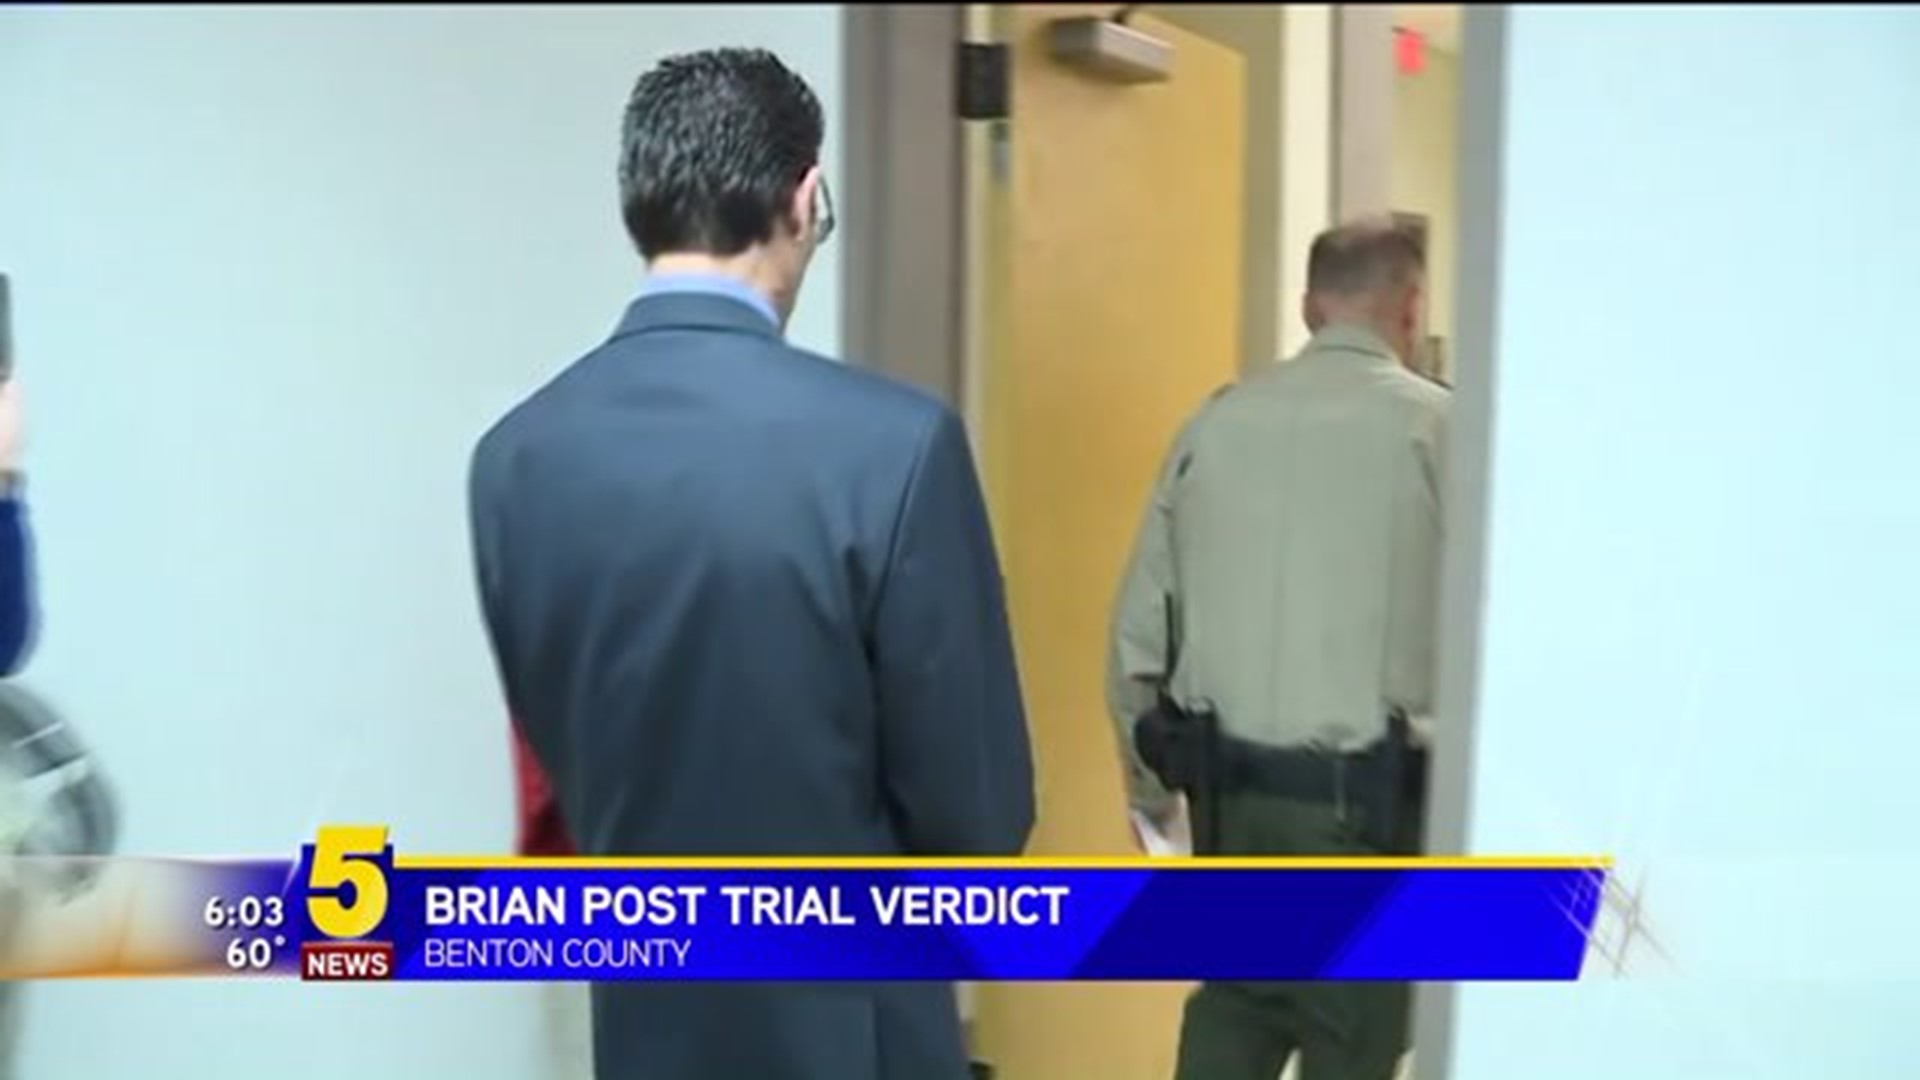 Brian Post Trial Verdict